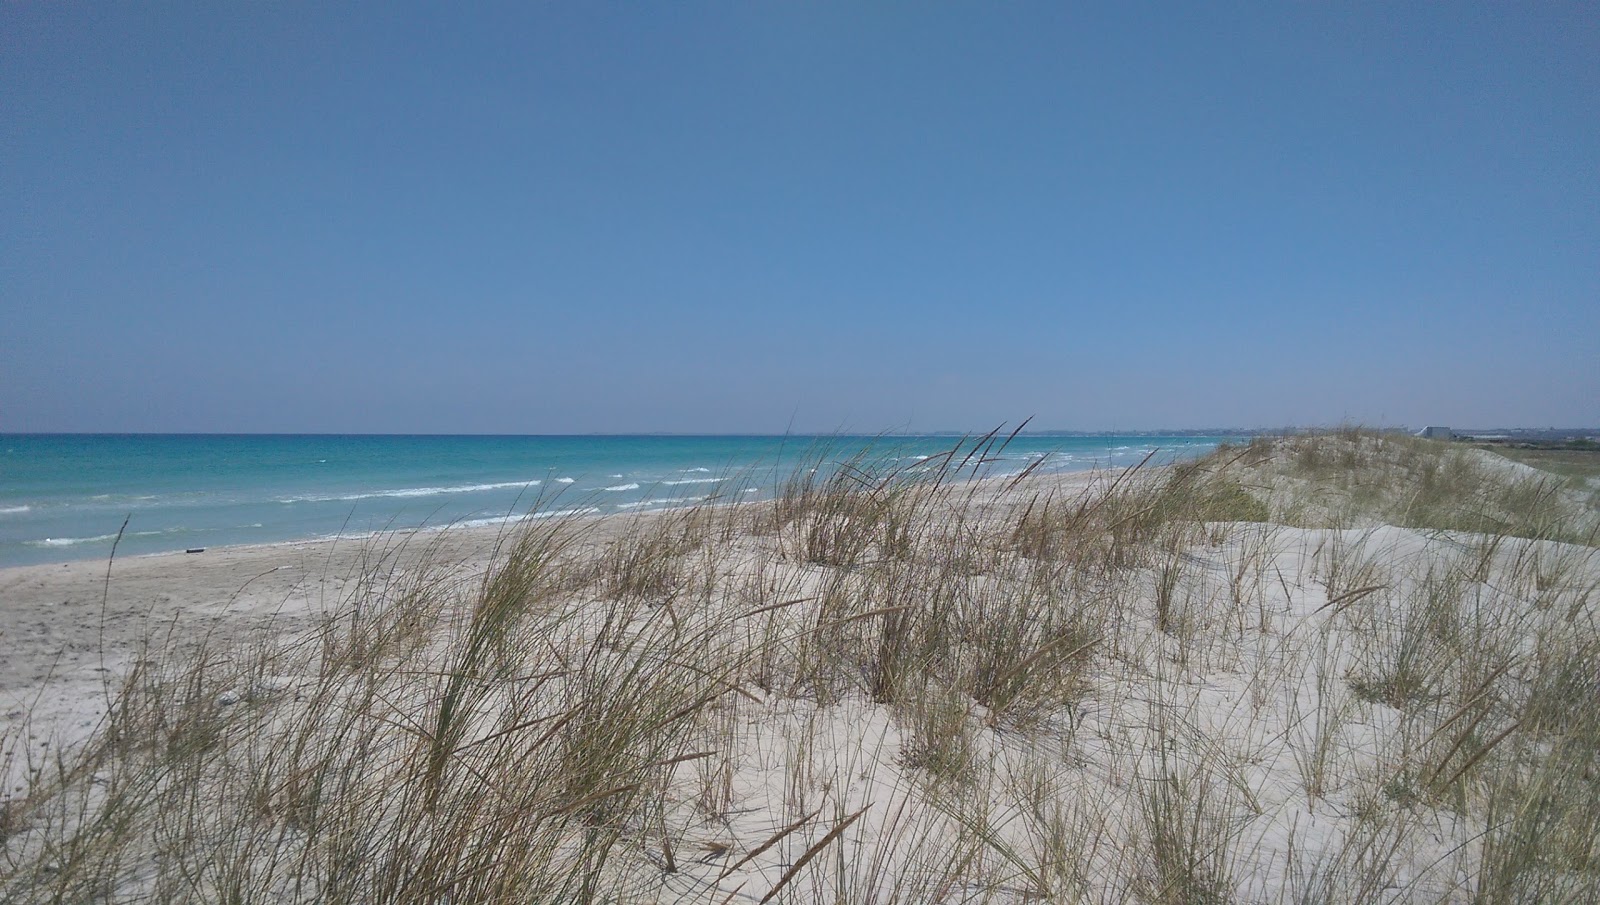 Fotografie cu Chraff beach cu o suprafață de nisip alb